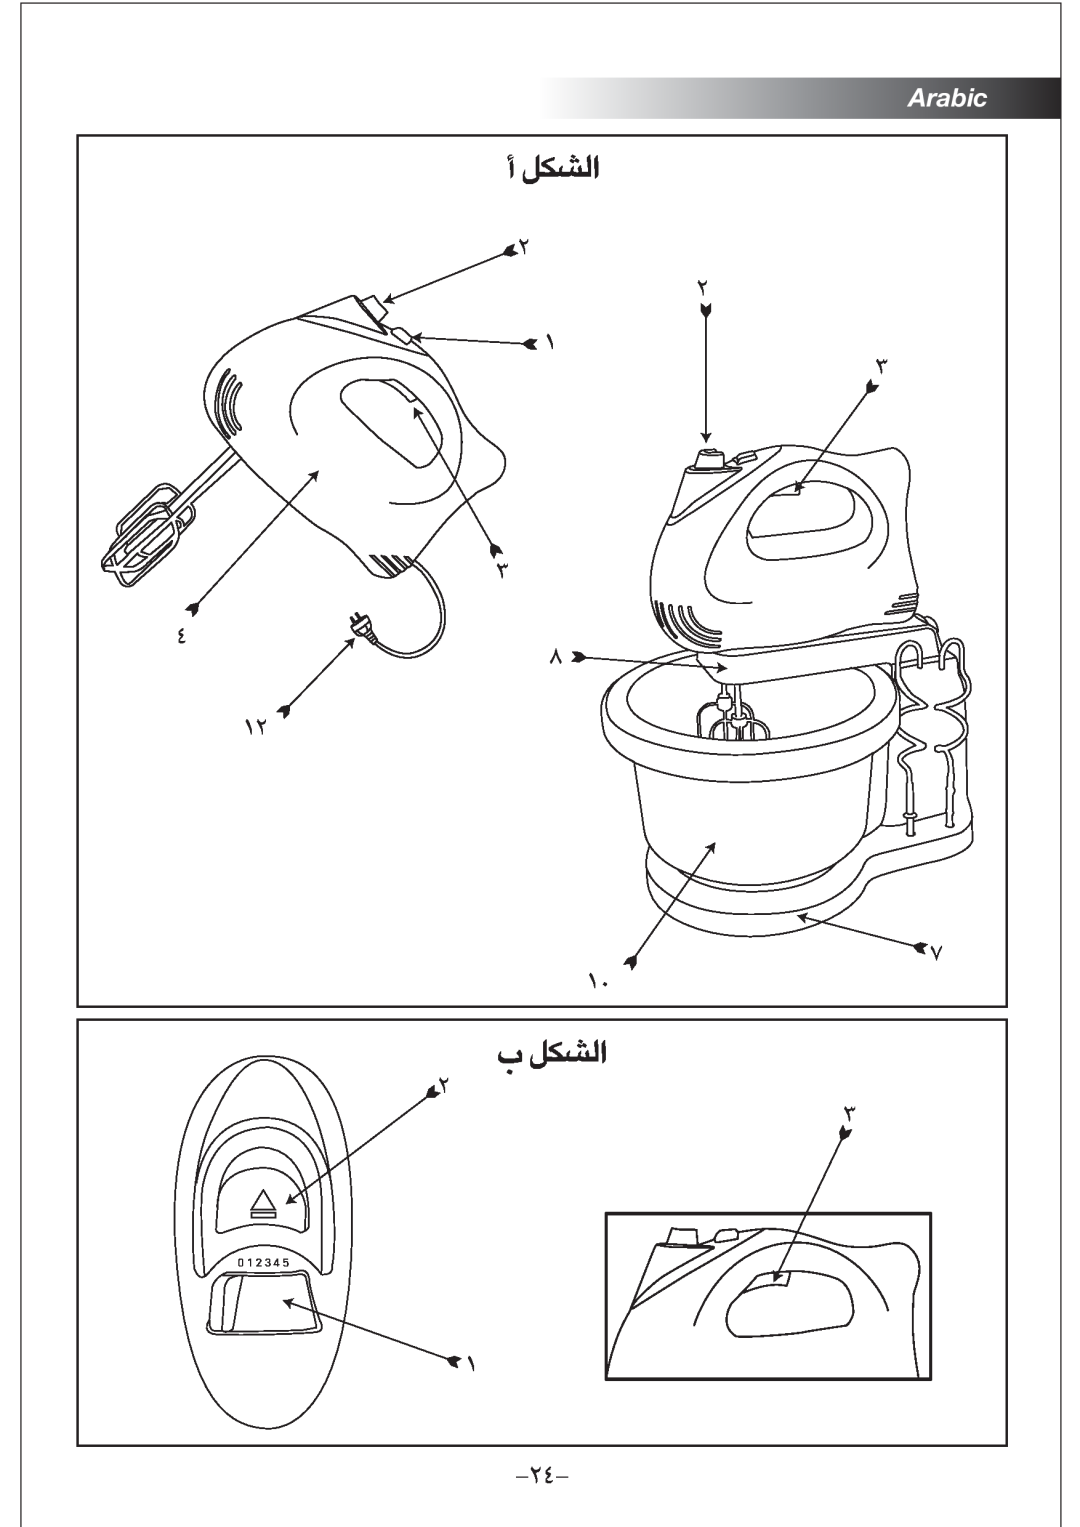 Black & Decker M300 manual √ AJq∞«, » AJq∞«, Arabic, 0 1 2 3 4 